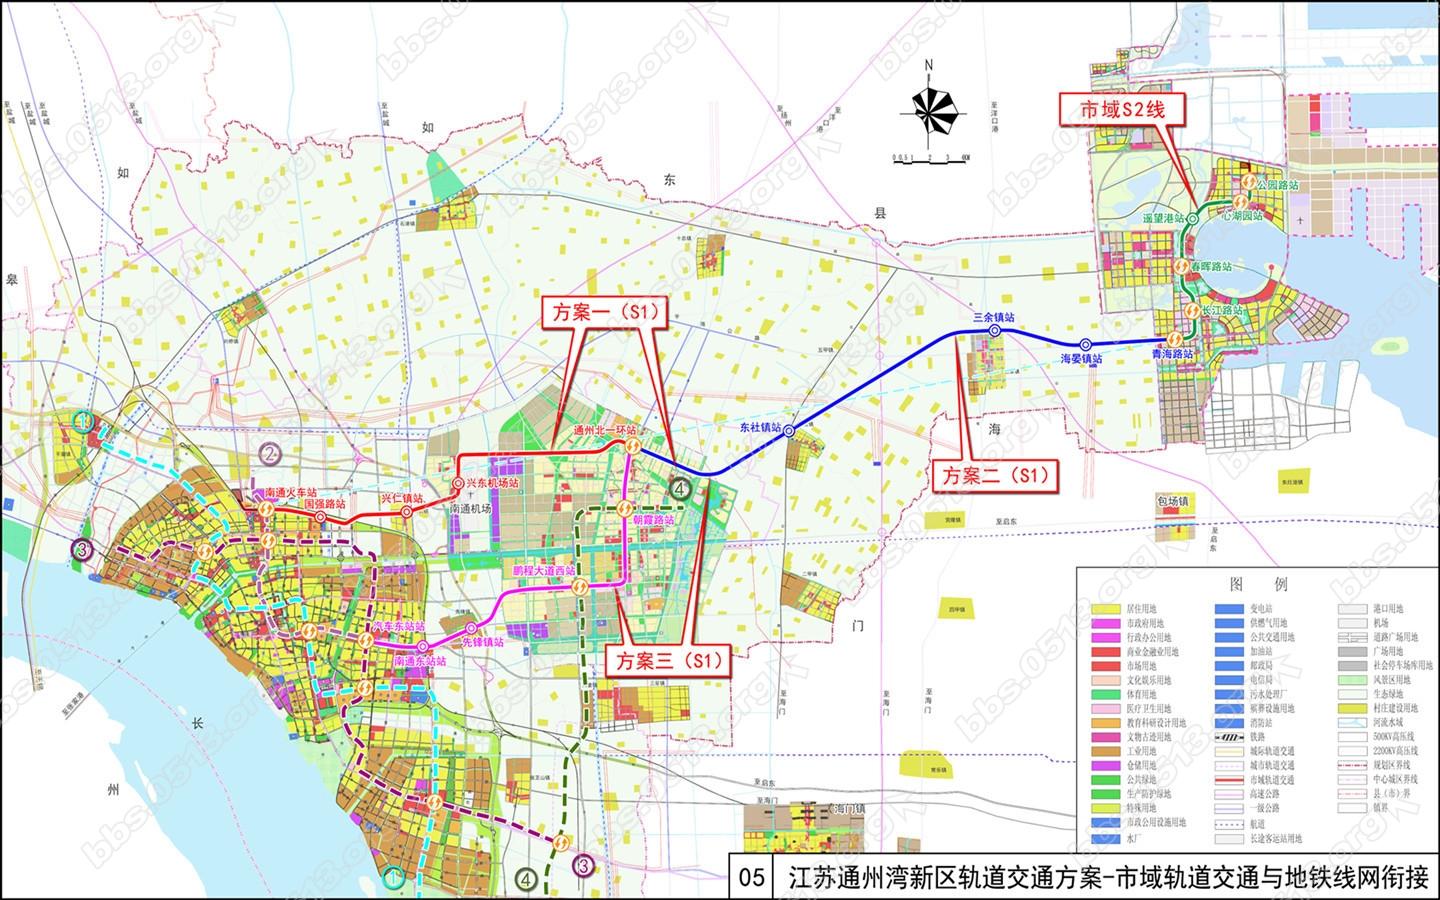 这两张规划方案图暴露了南通市未来的轨交线路走向